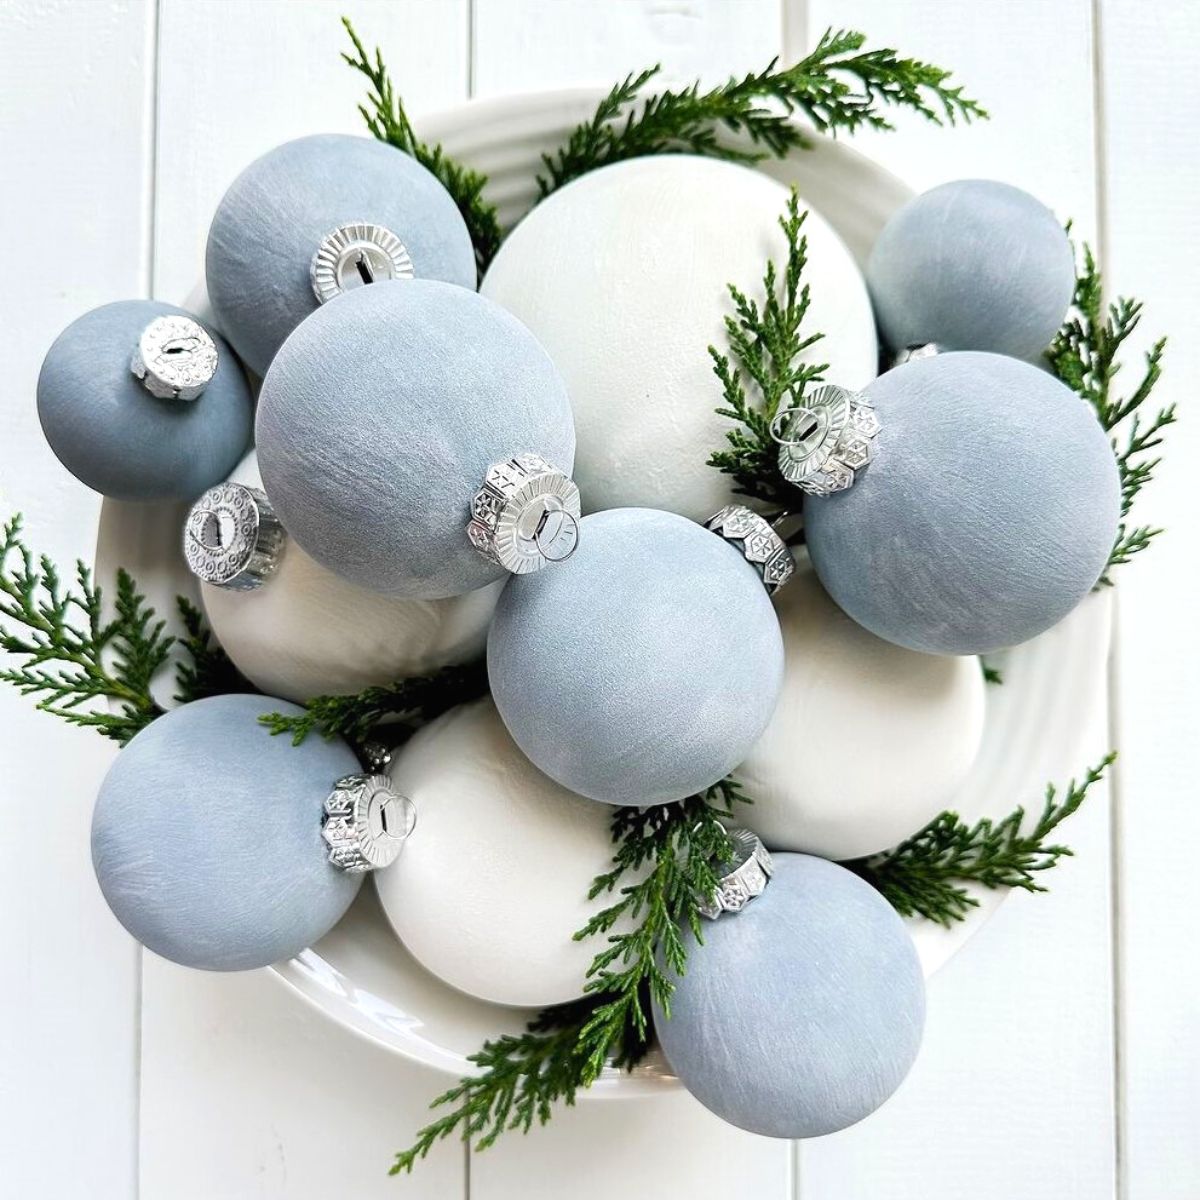 Light blue and bright white velvet ornaments